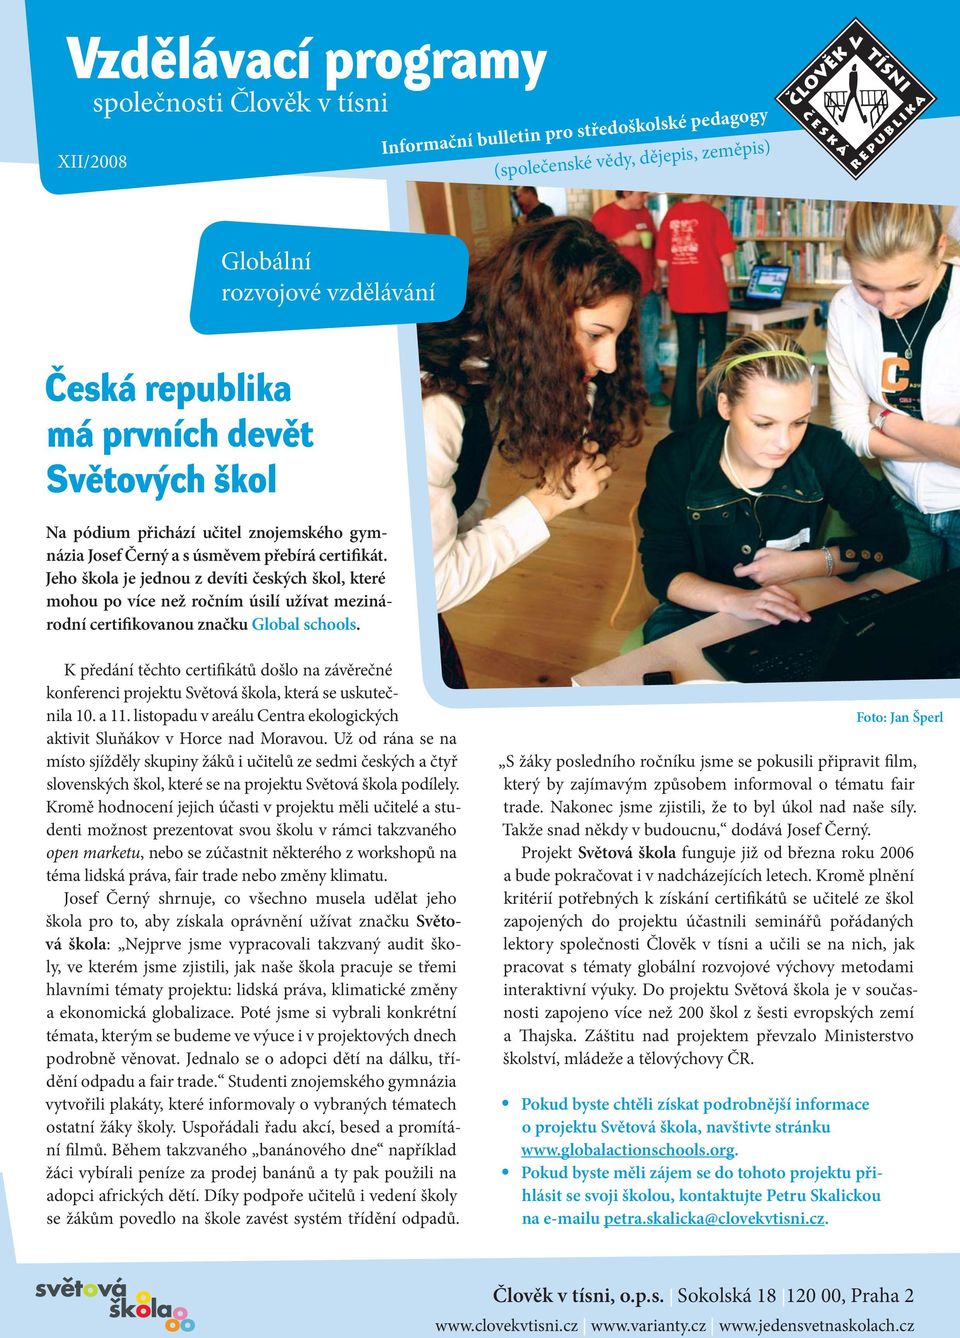 Jeho škola je jednou z devíti českých škol, které mohou po více než ročním úsilí užívat mezinárodní certifikovanou značku Global schools.